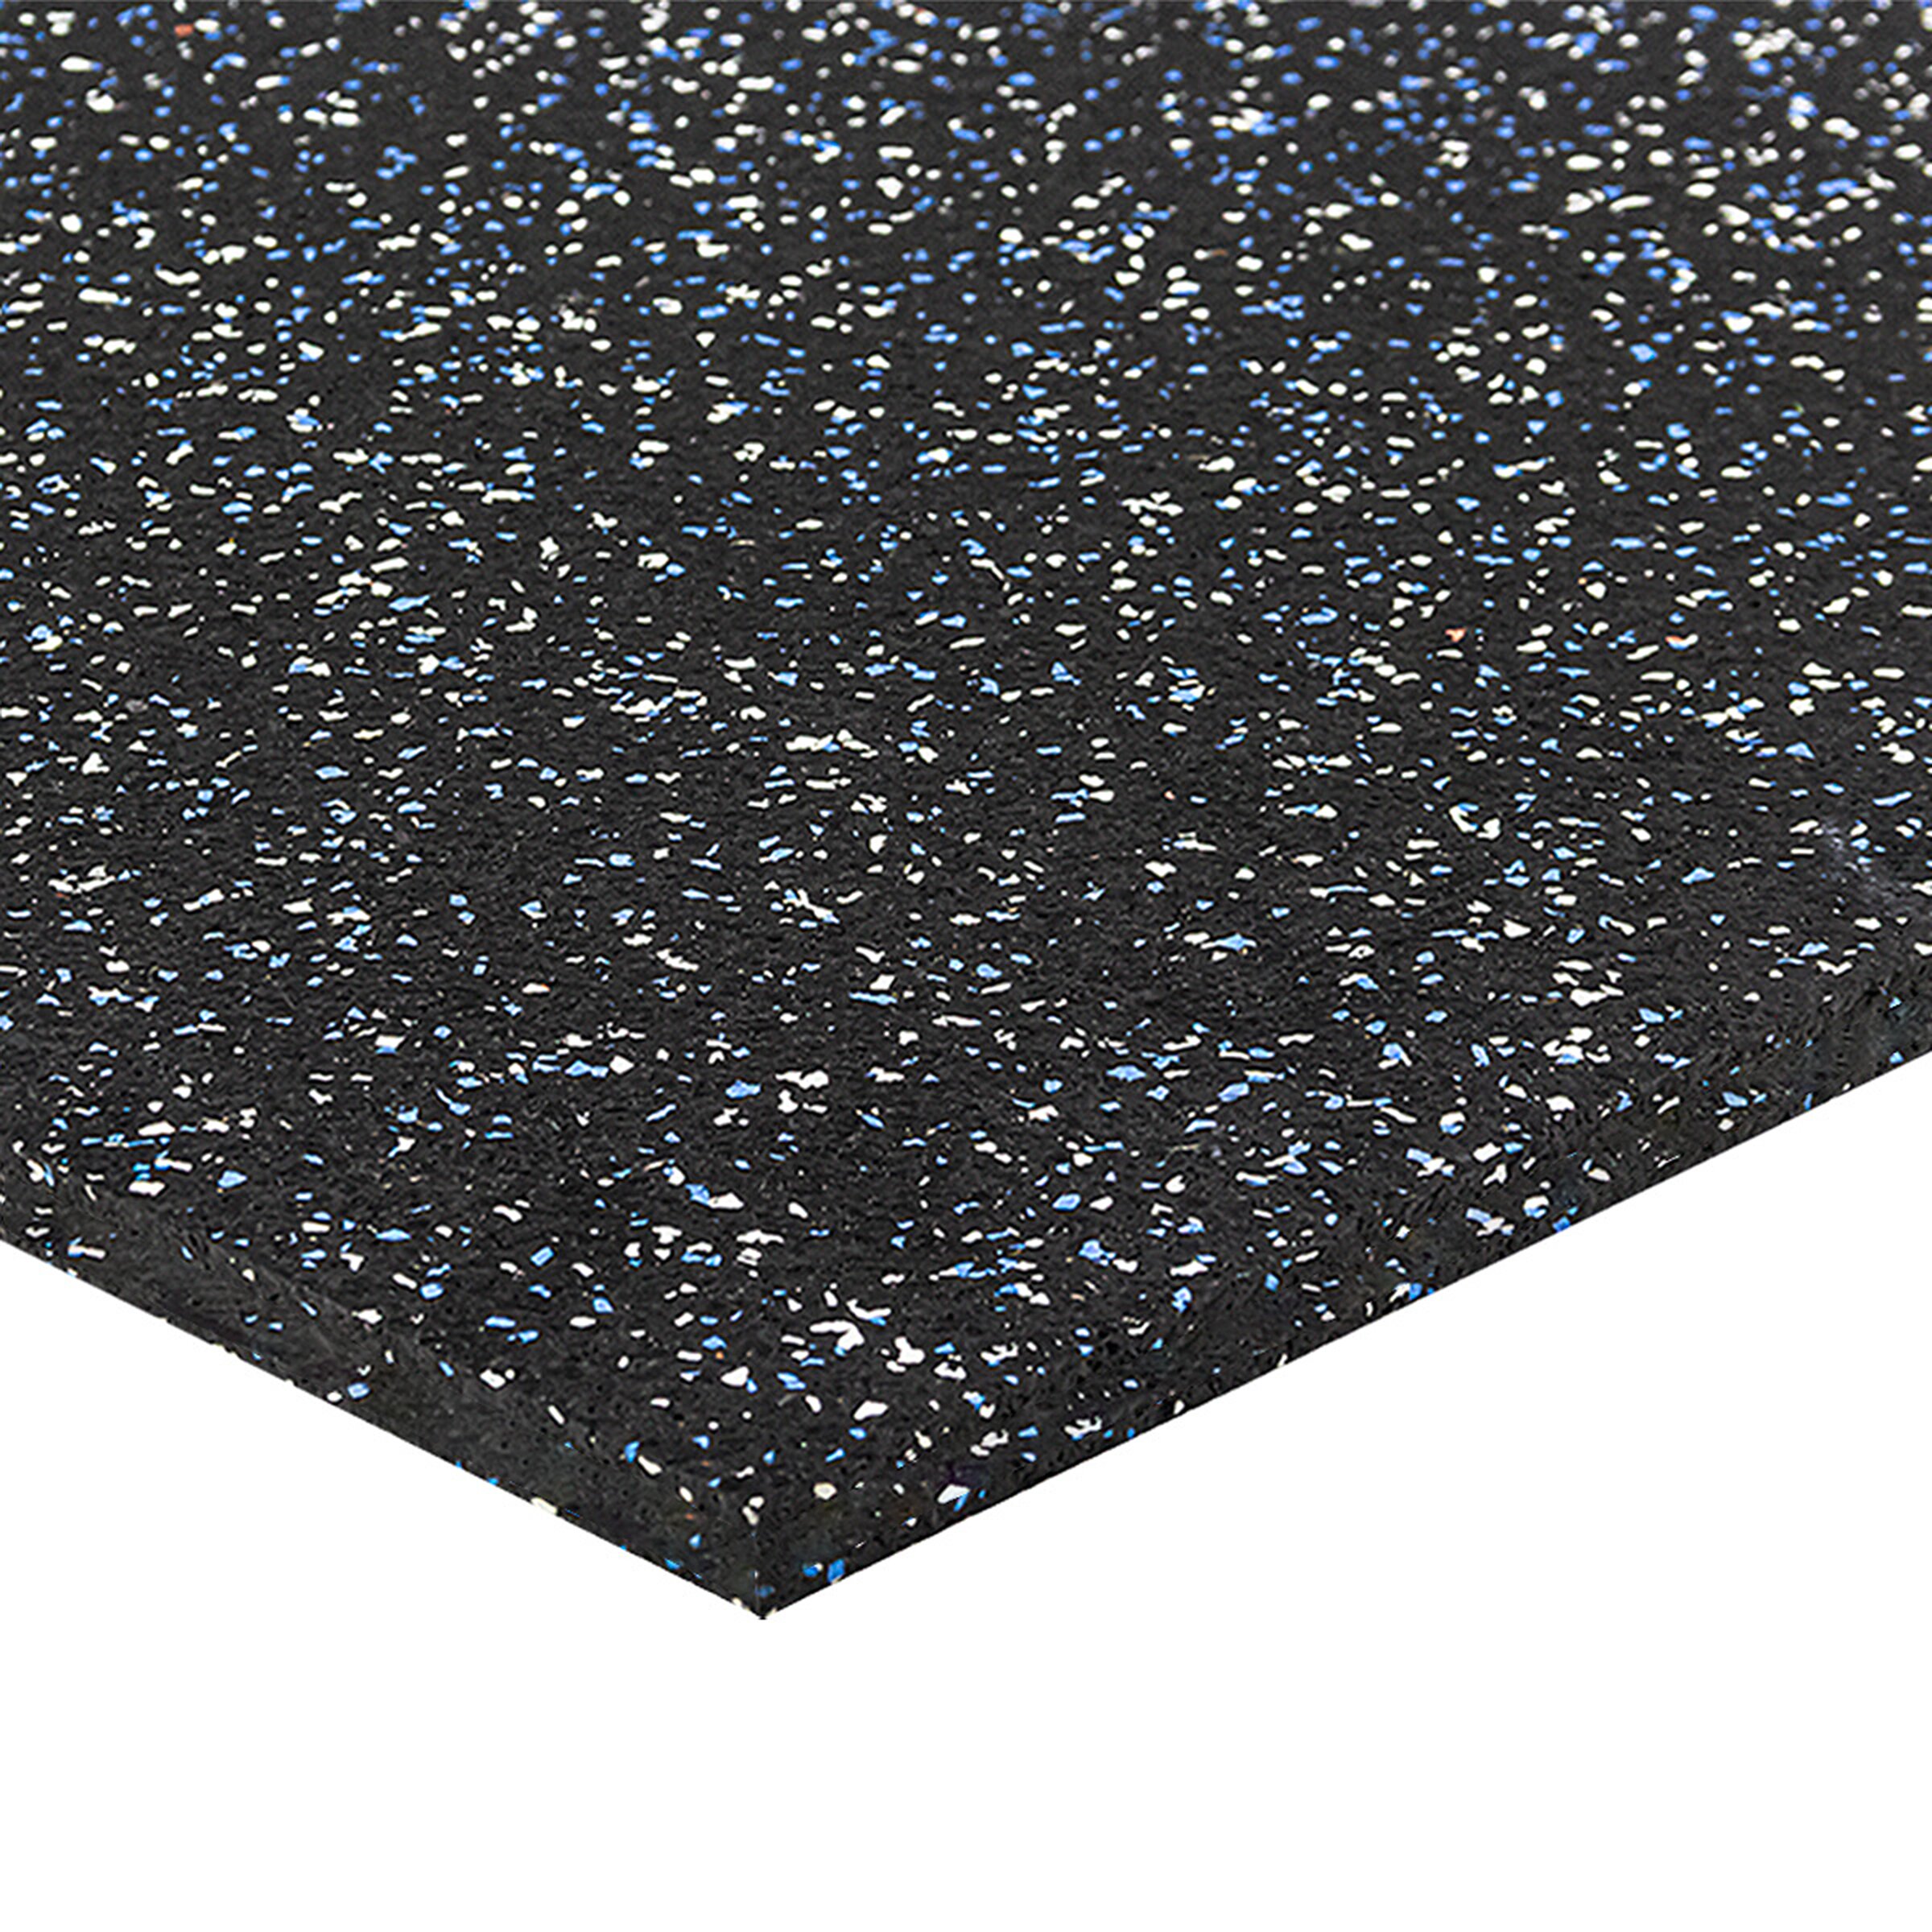 Černo-bílo-modrá podlahová guma FLOMA FitFlo SF1050 - délka 100 cm, šířka 100 cm, výška 1,6 cm